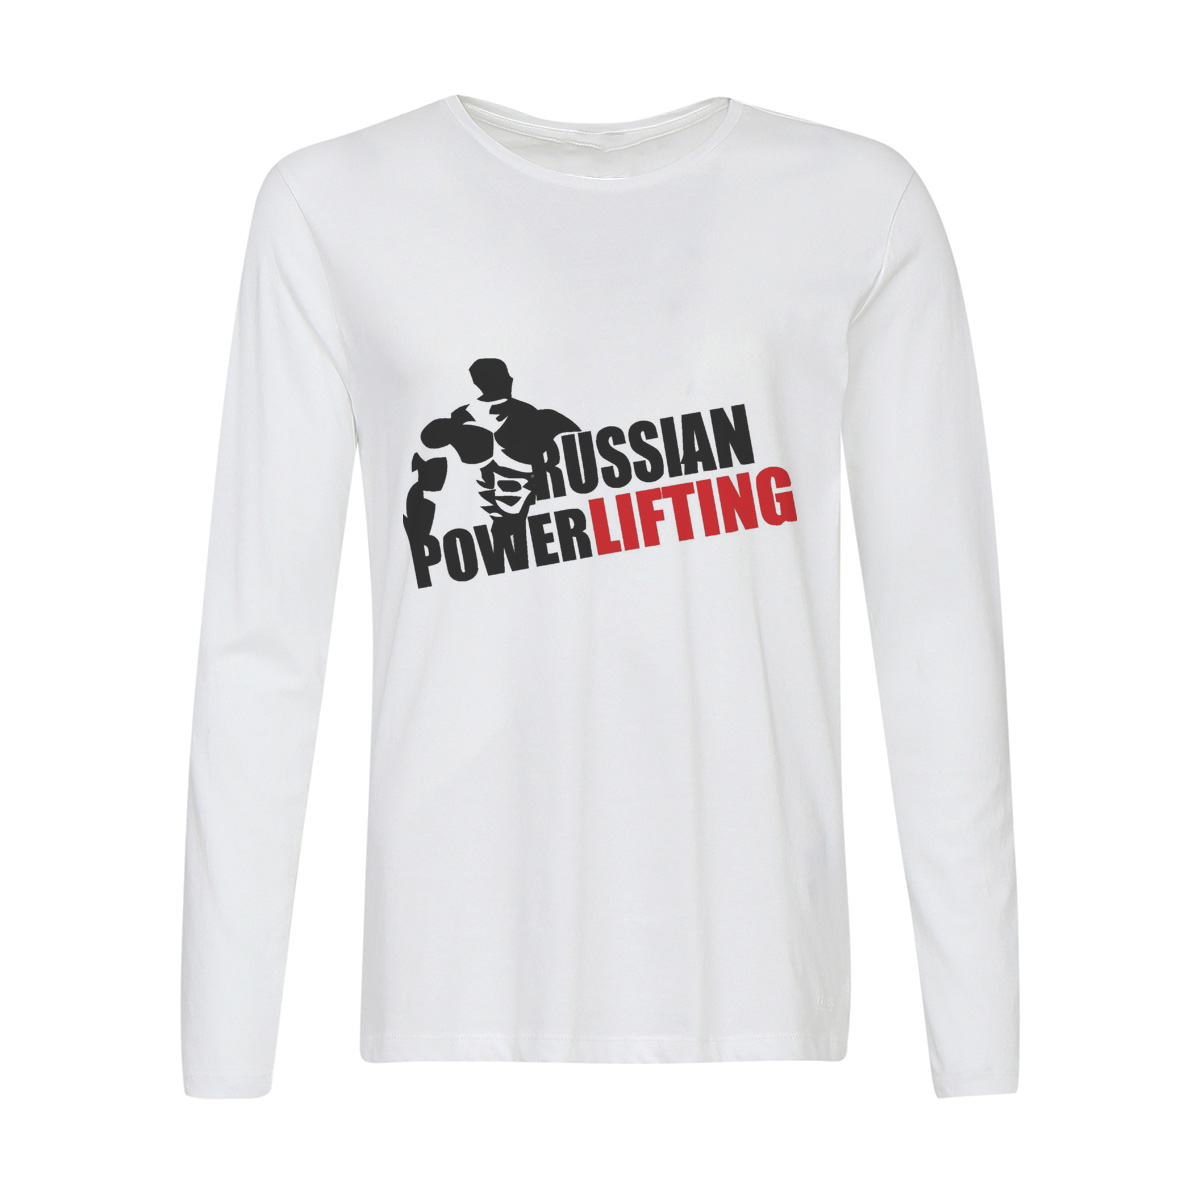 Лонгслив CoolPodarok Russian powerlifting (Русский пауэрлифтинг)